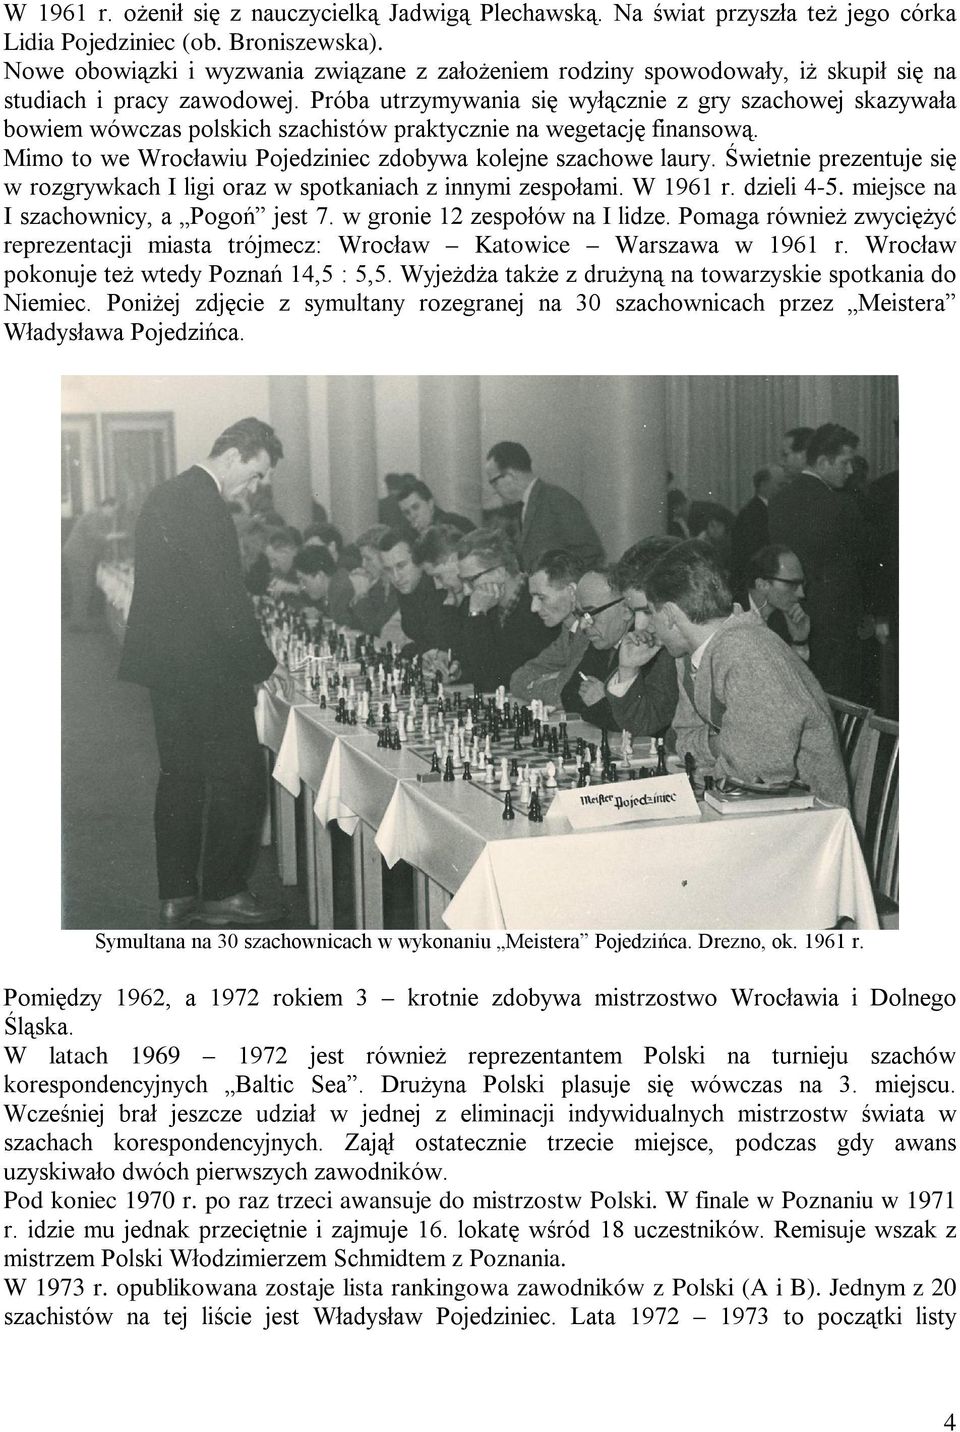 Próba utrzymywania się wyłącznie z gry szachowej skazywała bowiem wówczas polskich szachistów praktycznie na wegetację finansową. Mimo to we Wrocławiu Pojedziniec zdobywa kolejne szachowe laury.